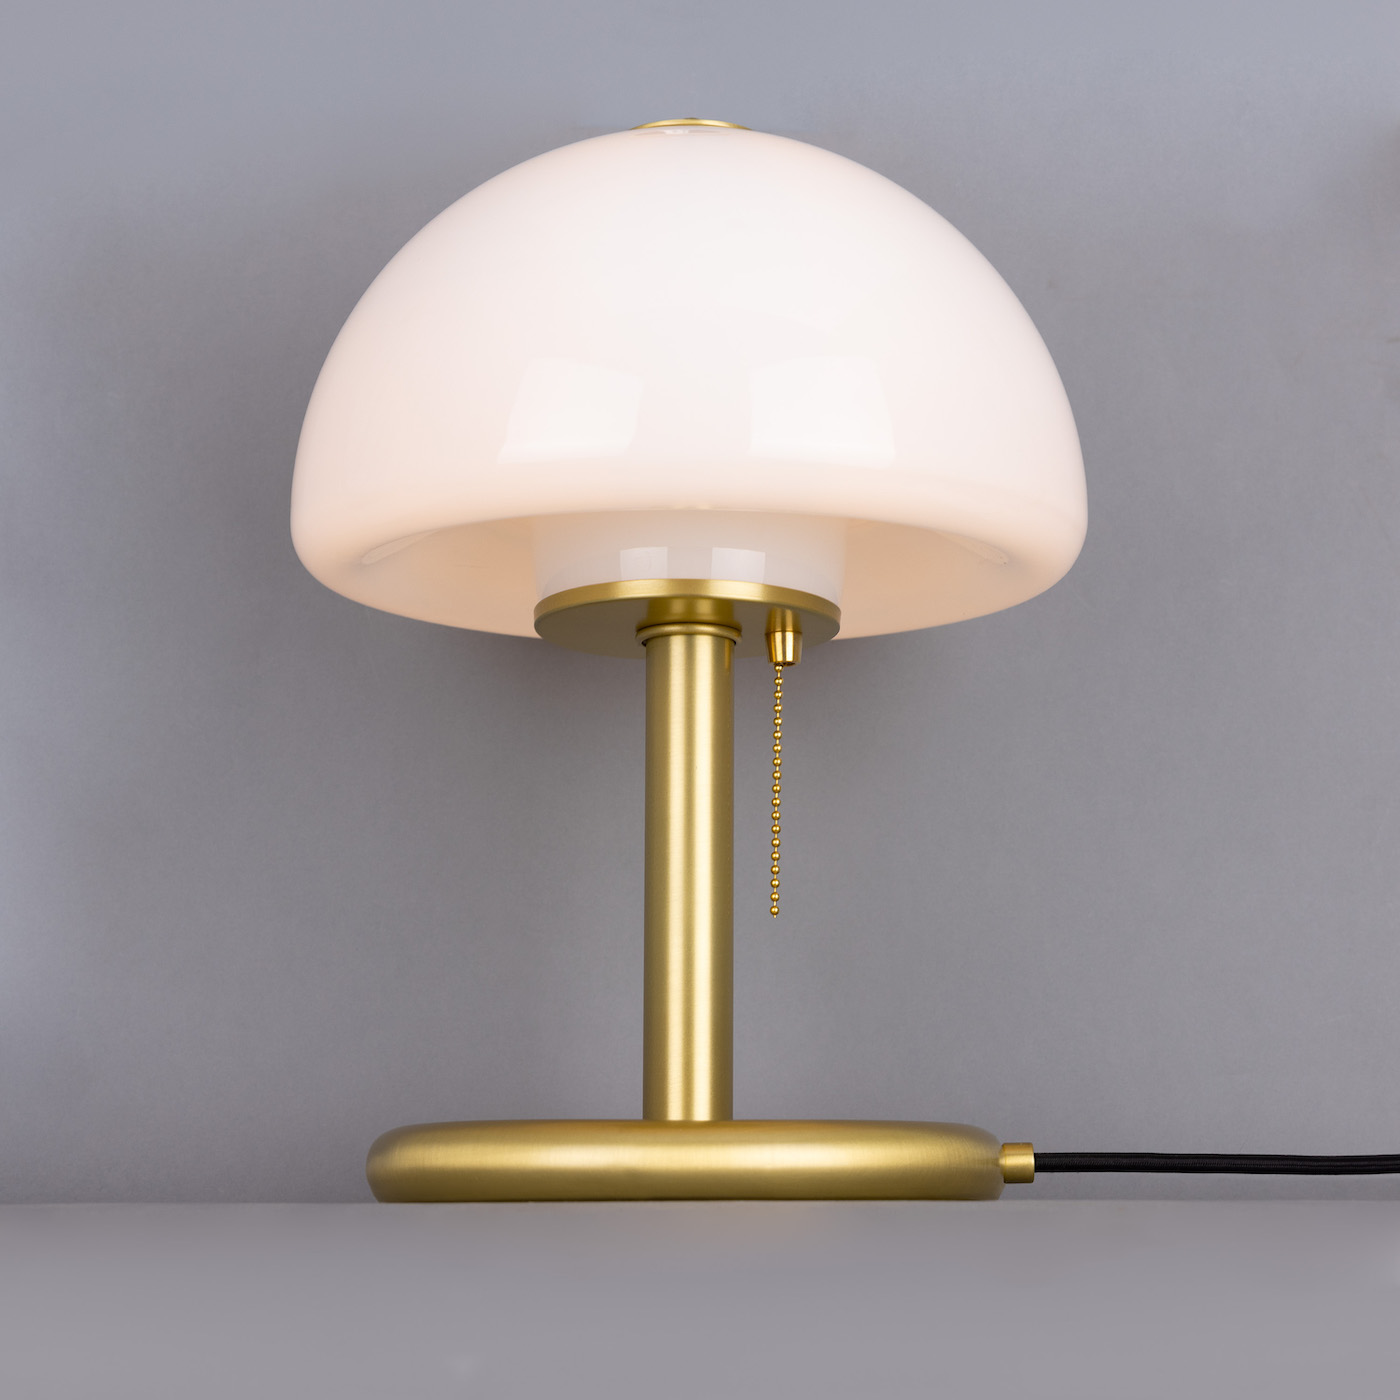 Kleine Design-Tischleuchte „Pilz“ mit schönem Opalglasschirm und Zugschalter: Der opale Glasschirm ist nach unten hin geschlossen